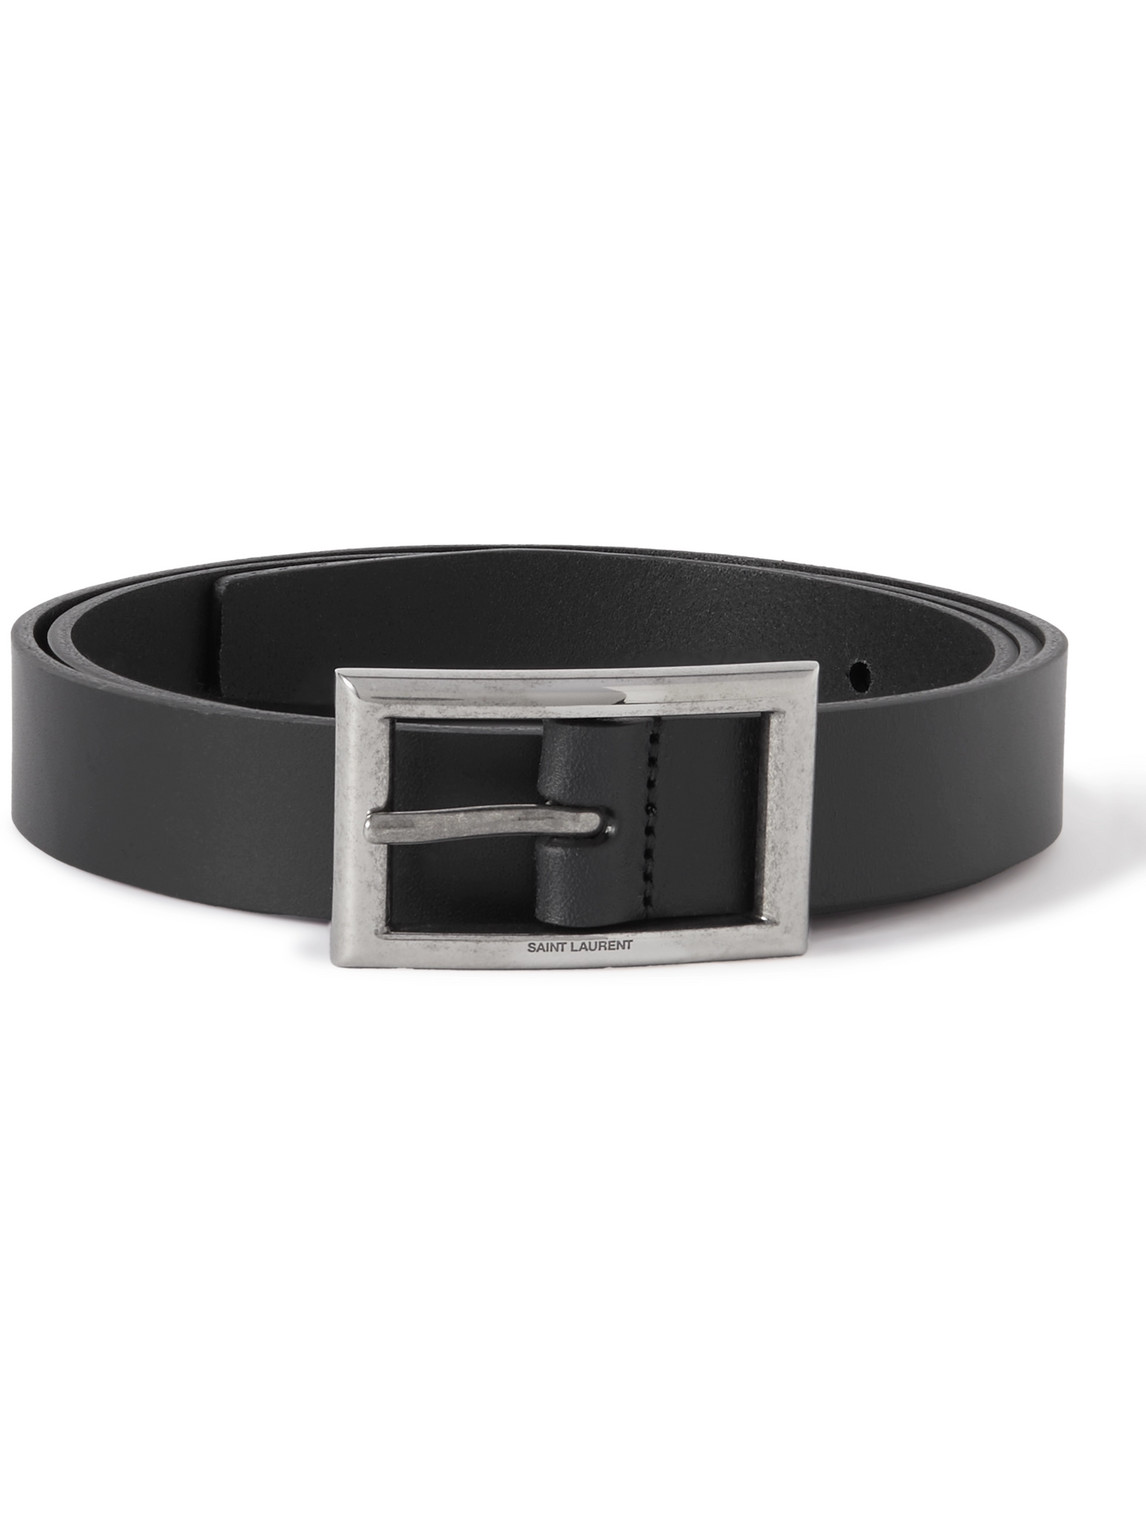 SAINT LAURENT - 3cm Leather Belt - Men - Black - EU 100 von SAINT LAURENT